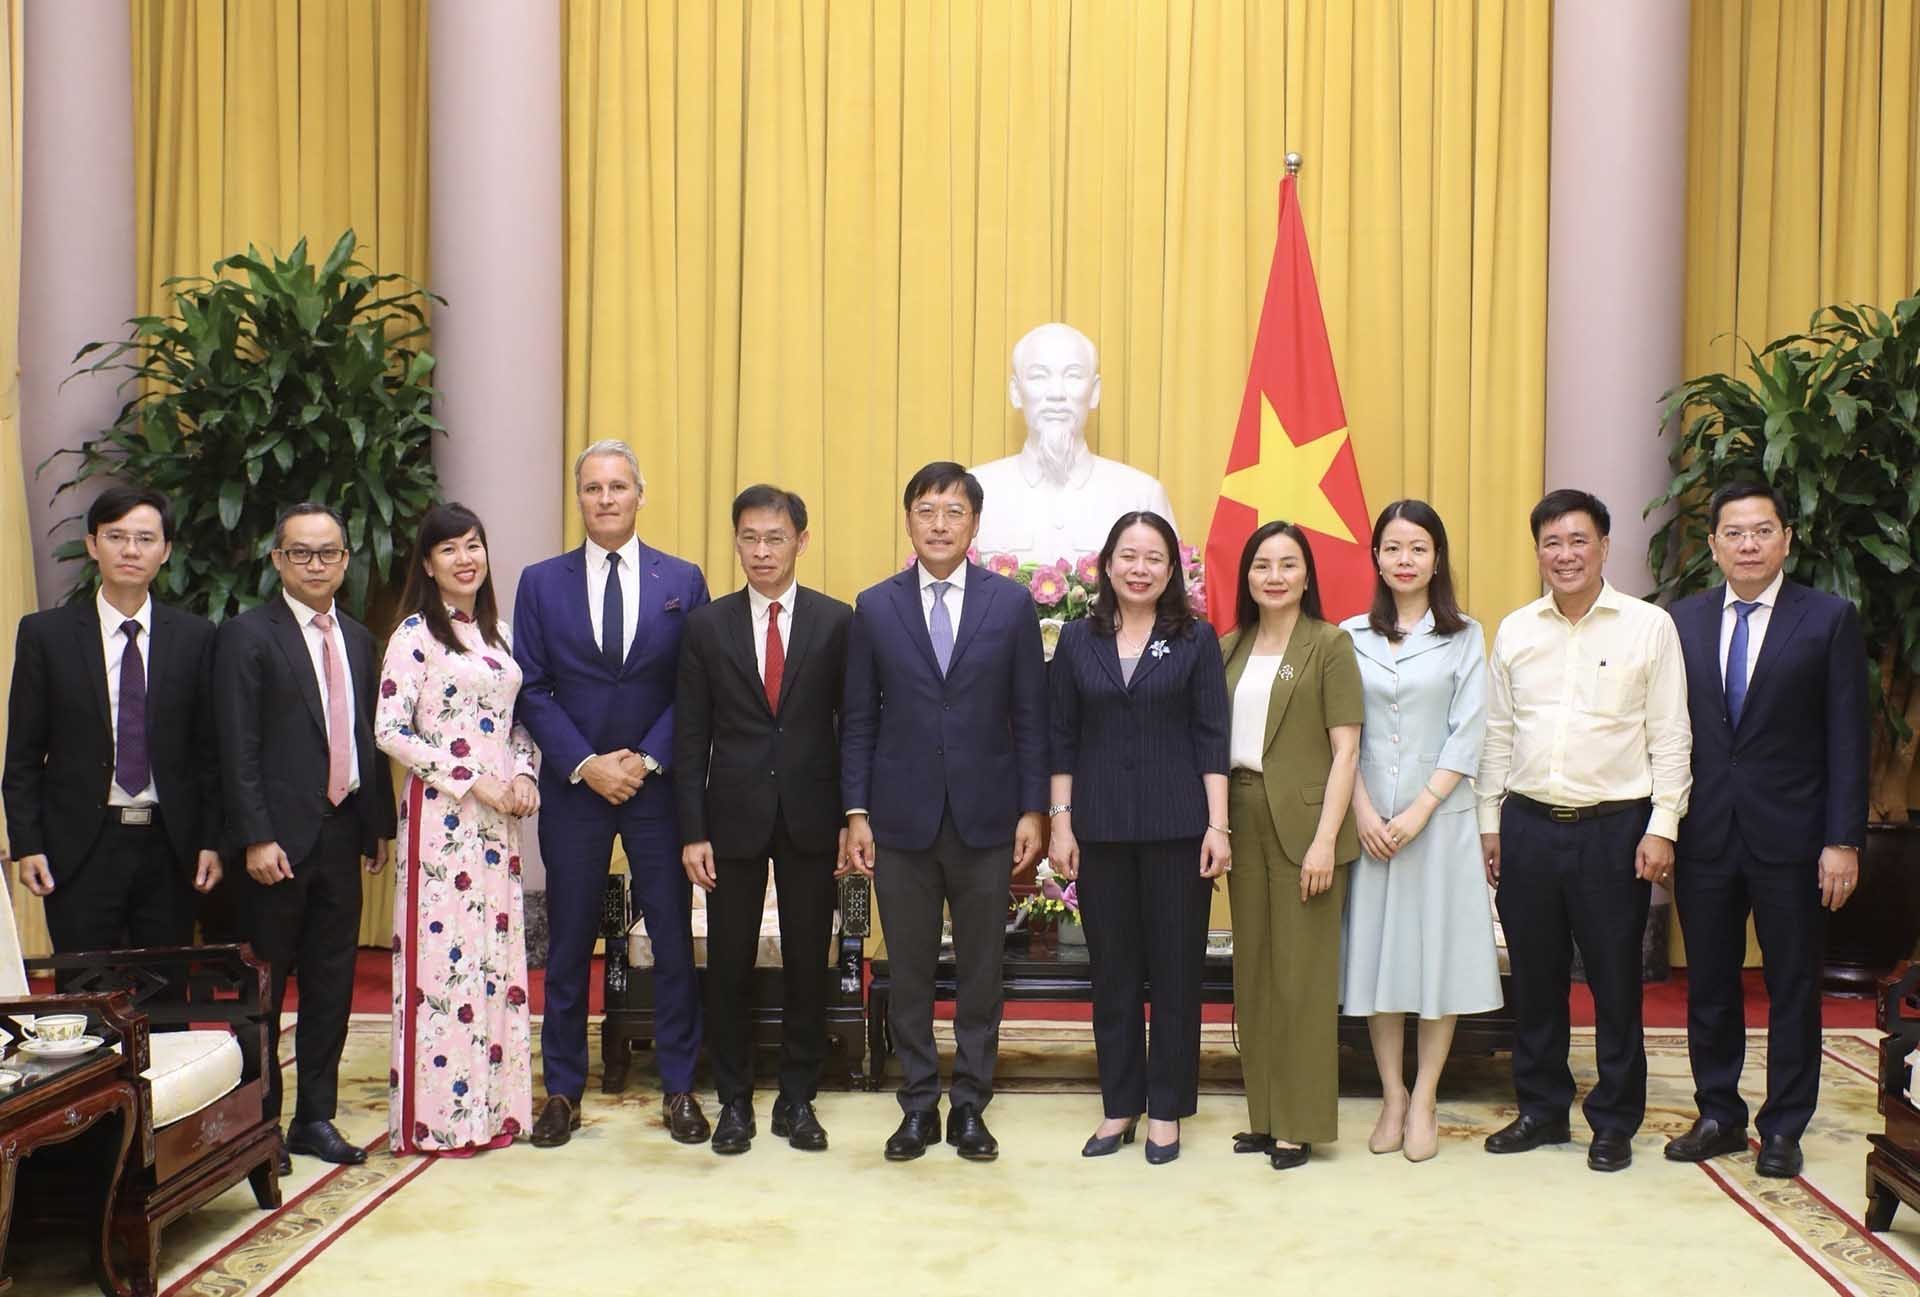 Phó Chủ tịch nước Võ Thị Ánh Xuân chụp ảnh chung với Chủ tịch Tập đoàn Bảo hiểm Nhân thọ AIA Lee Yuan Siong và các đại biểu. (Nguồn: TTXVN)